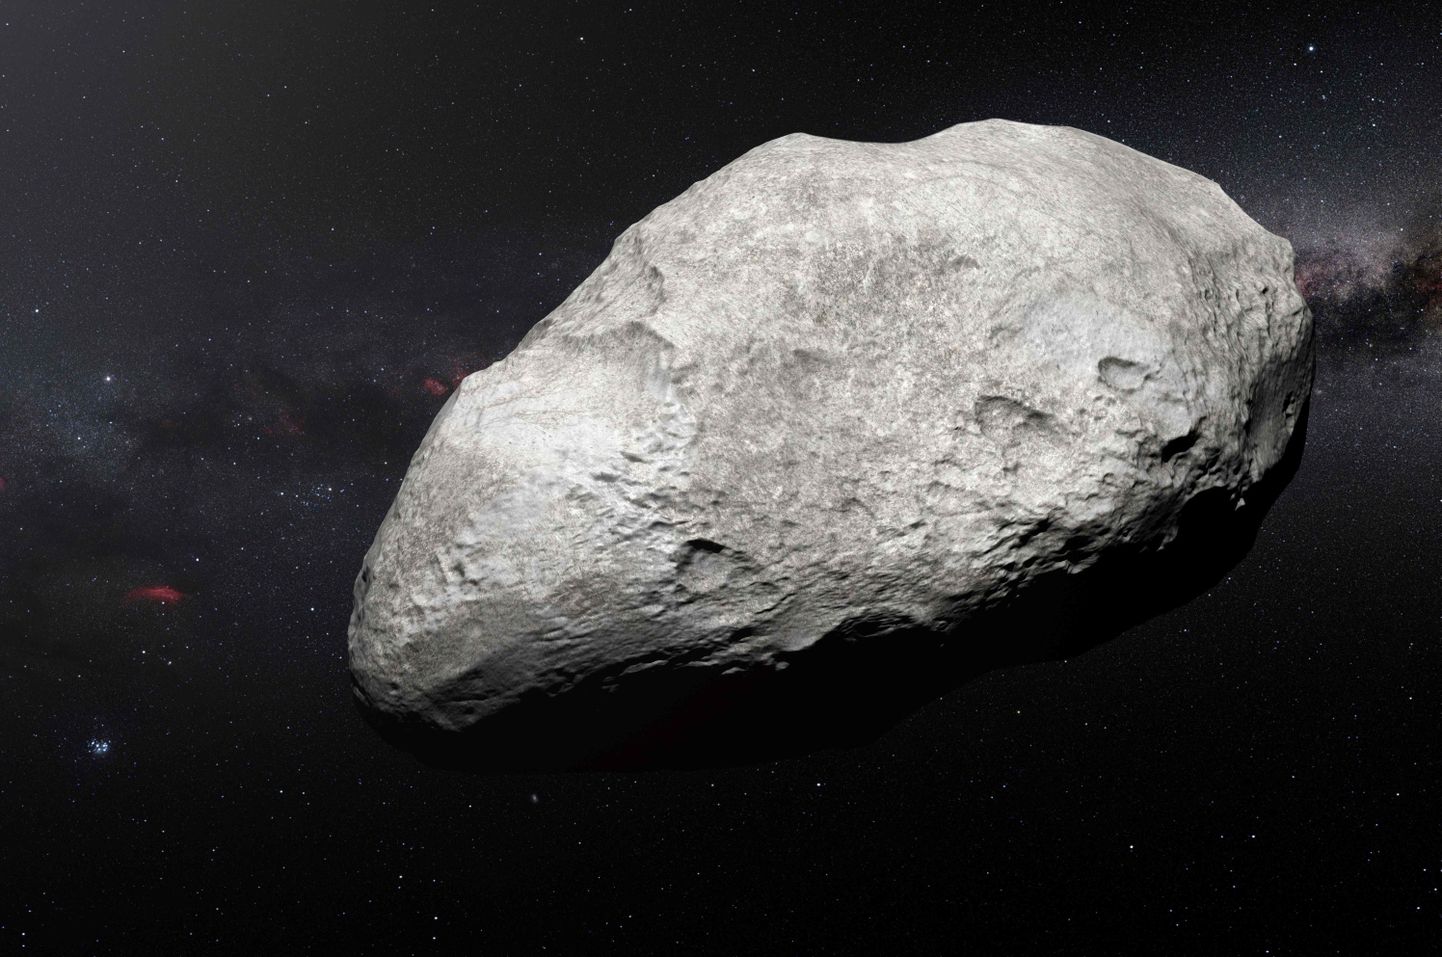 Asteroid. Pilt on illustreeriv